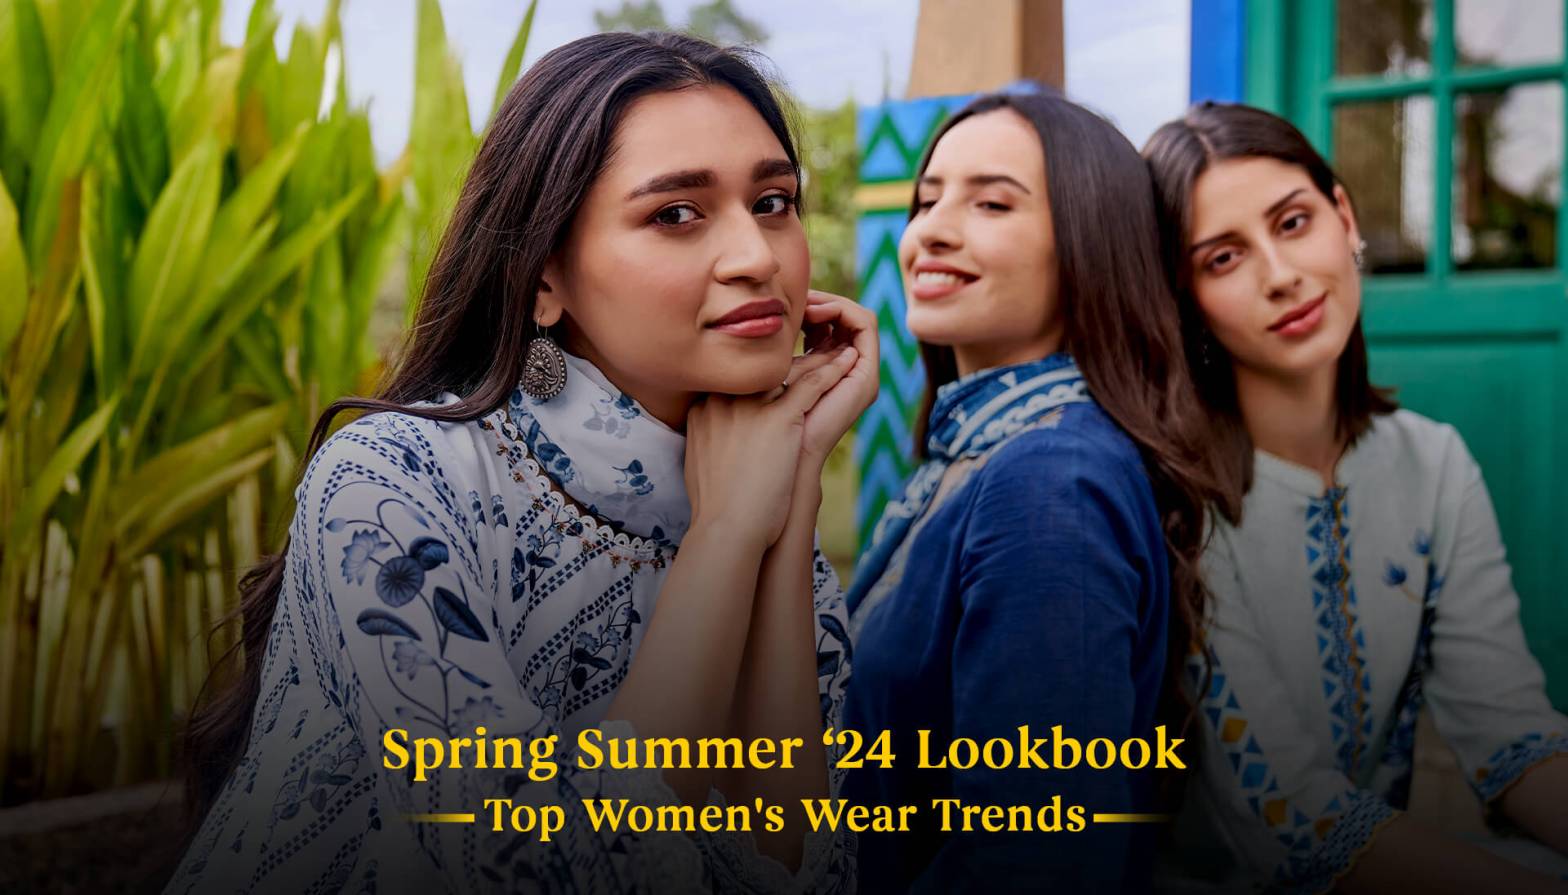 Spring Summer’24 Lookbook: Top Women's Wear Trends